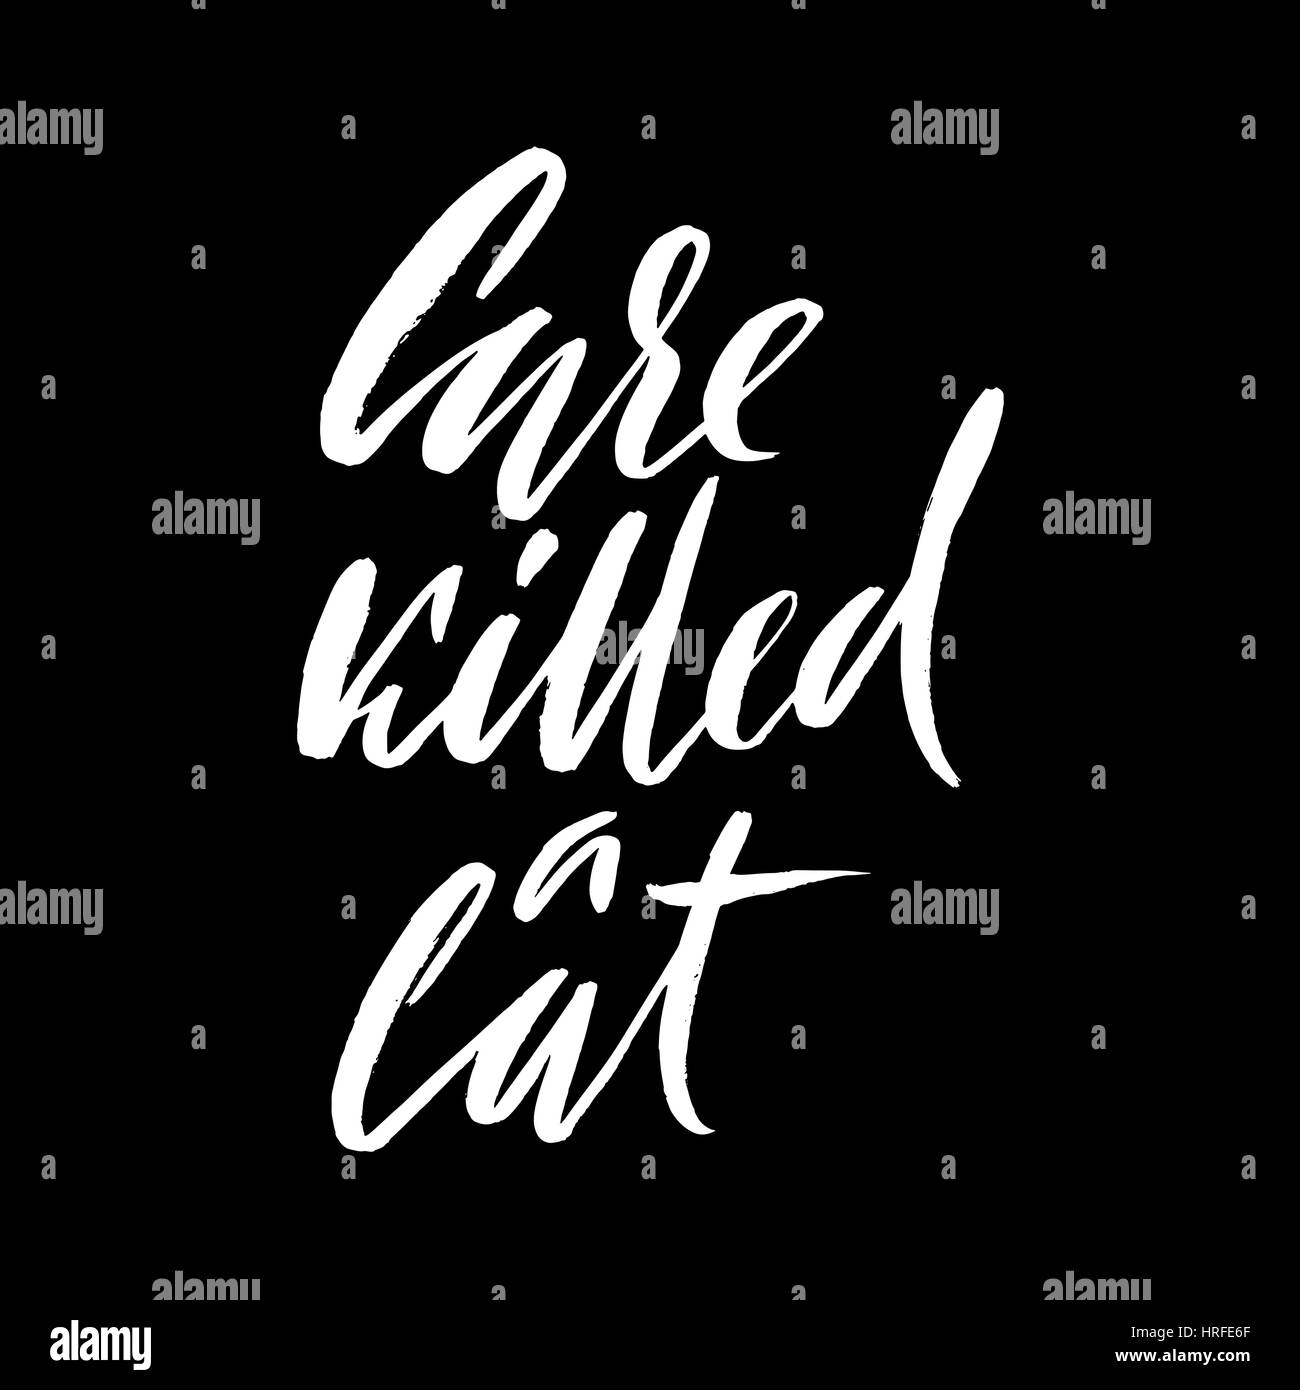 Pflege eine Katze getötet. Handgezeichnete Schriftzug Sprichwort. Vektor-Typografie-Design. Handschriftliche Inschrift Stock Vektor